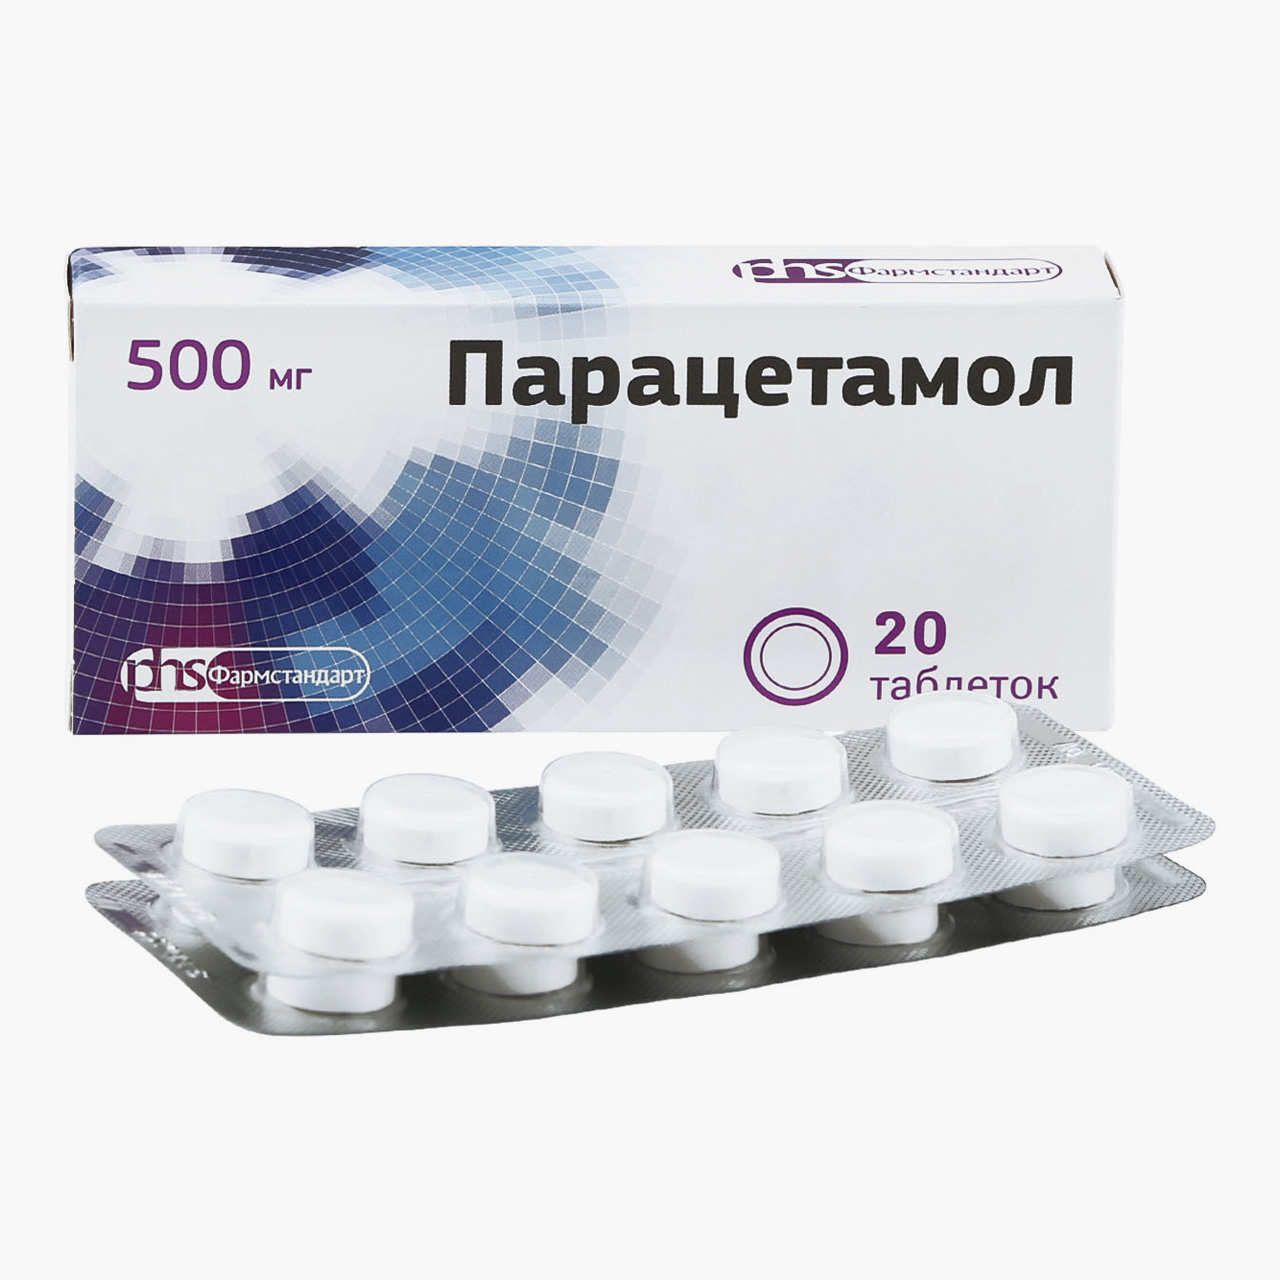 Парацетамол — самое недорогое обезболивающее. Источник: eapteka.ru